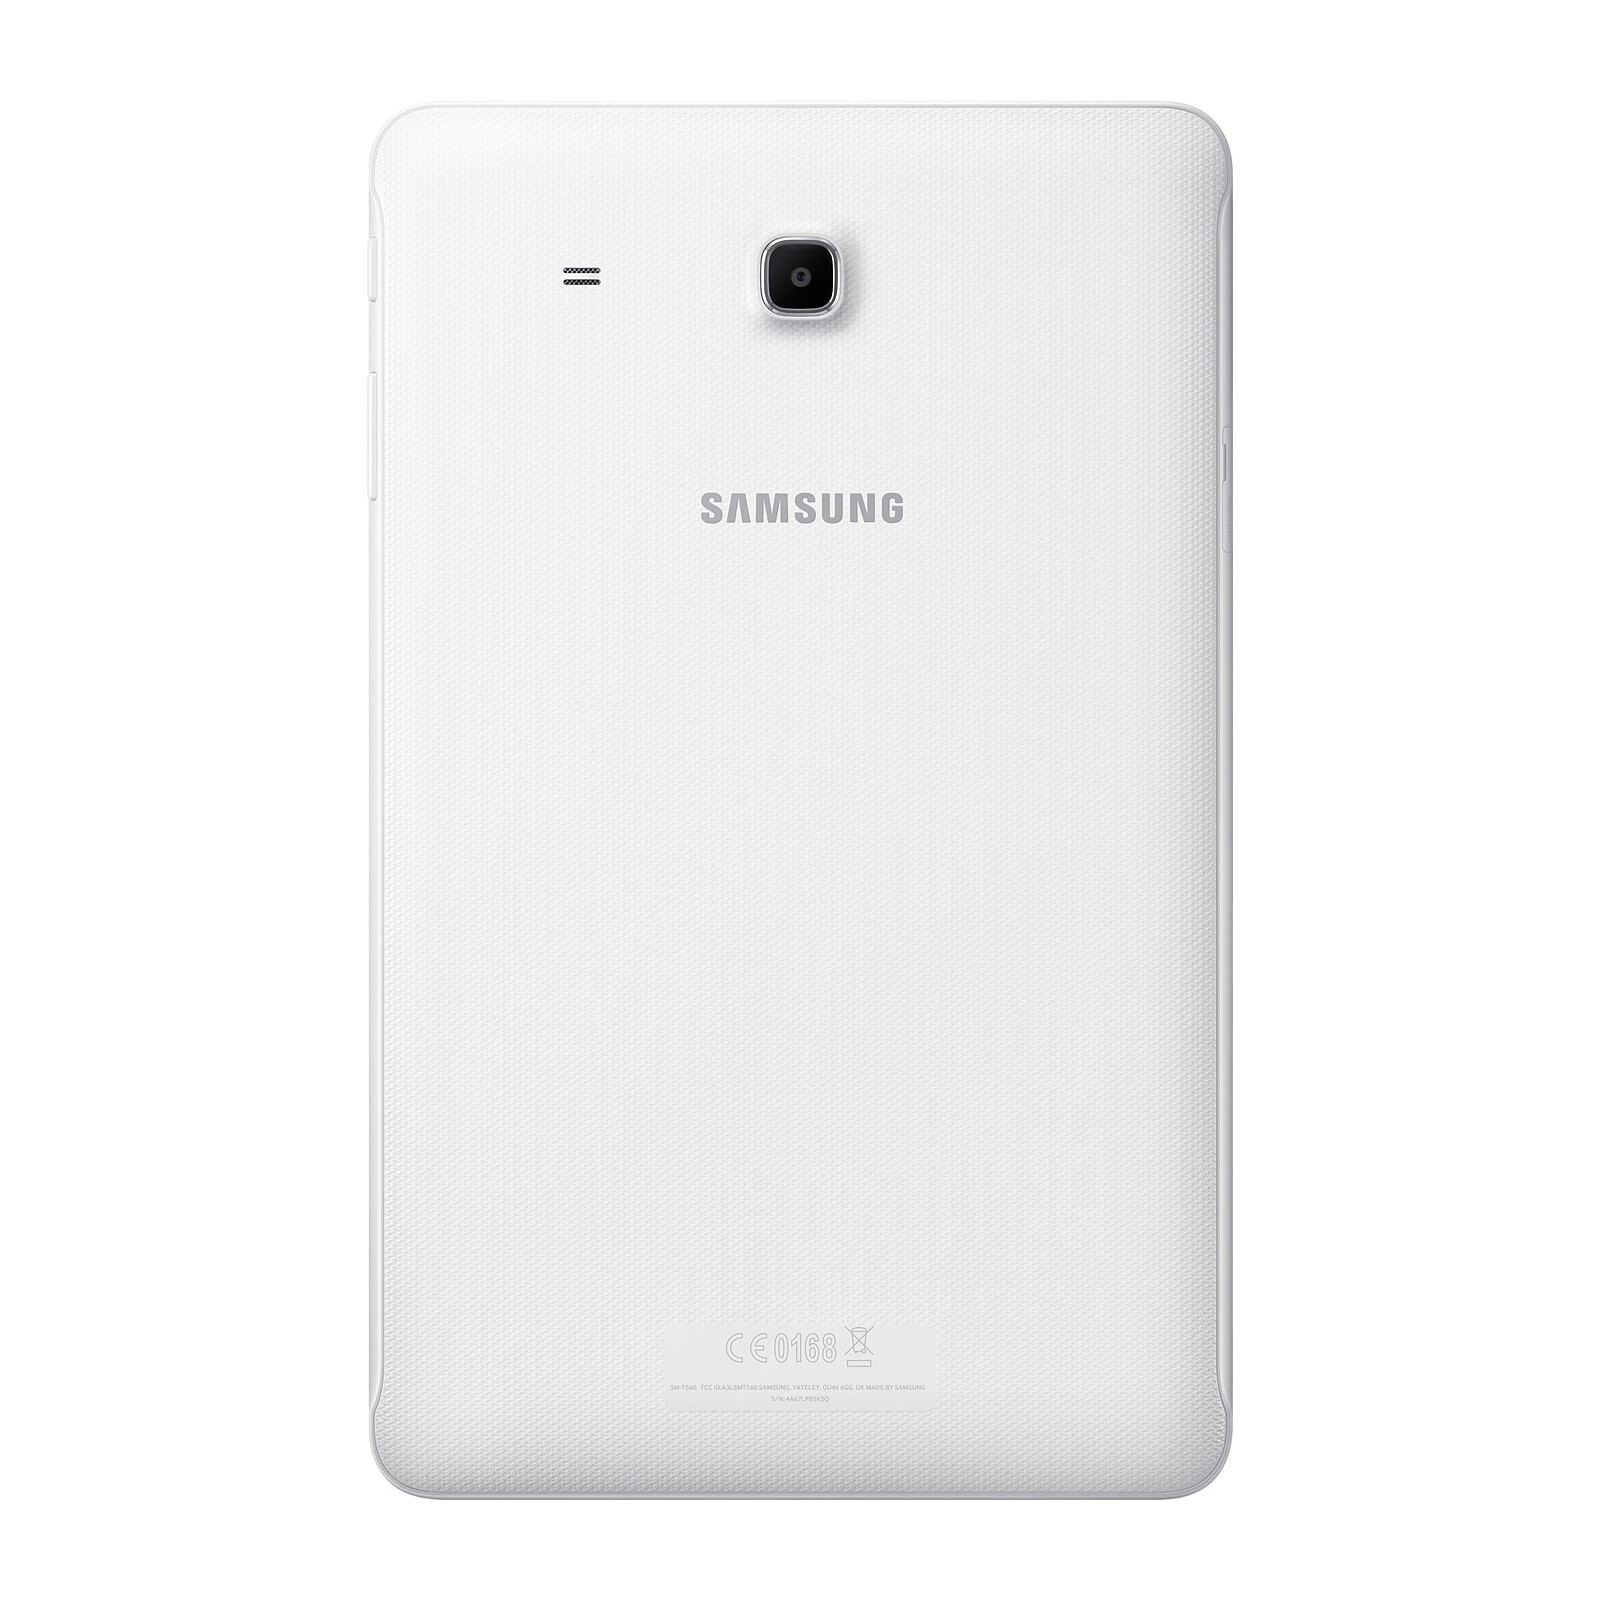 düzenlilik diyet Yaz  Samsung Galaxy Tab E 9.6